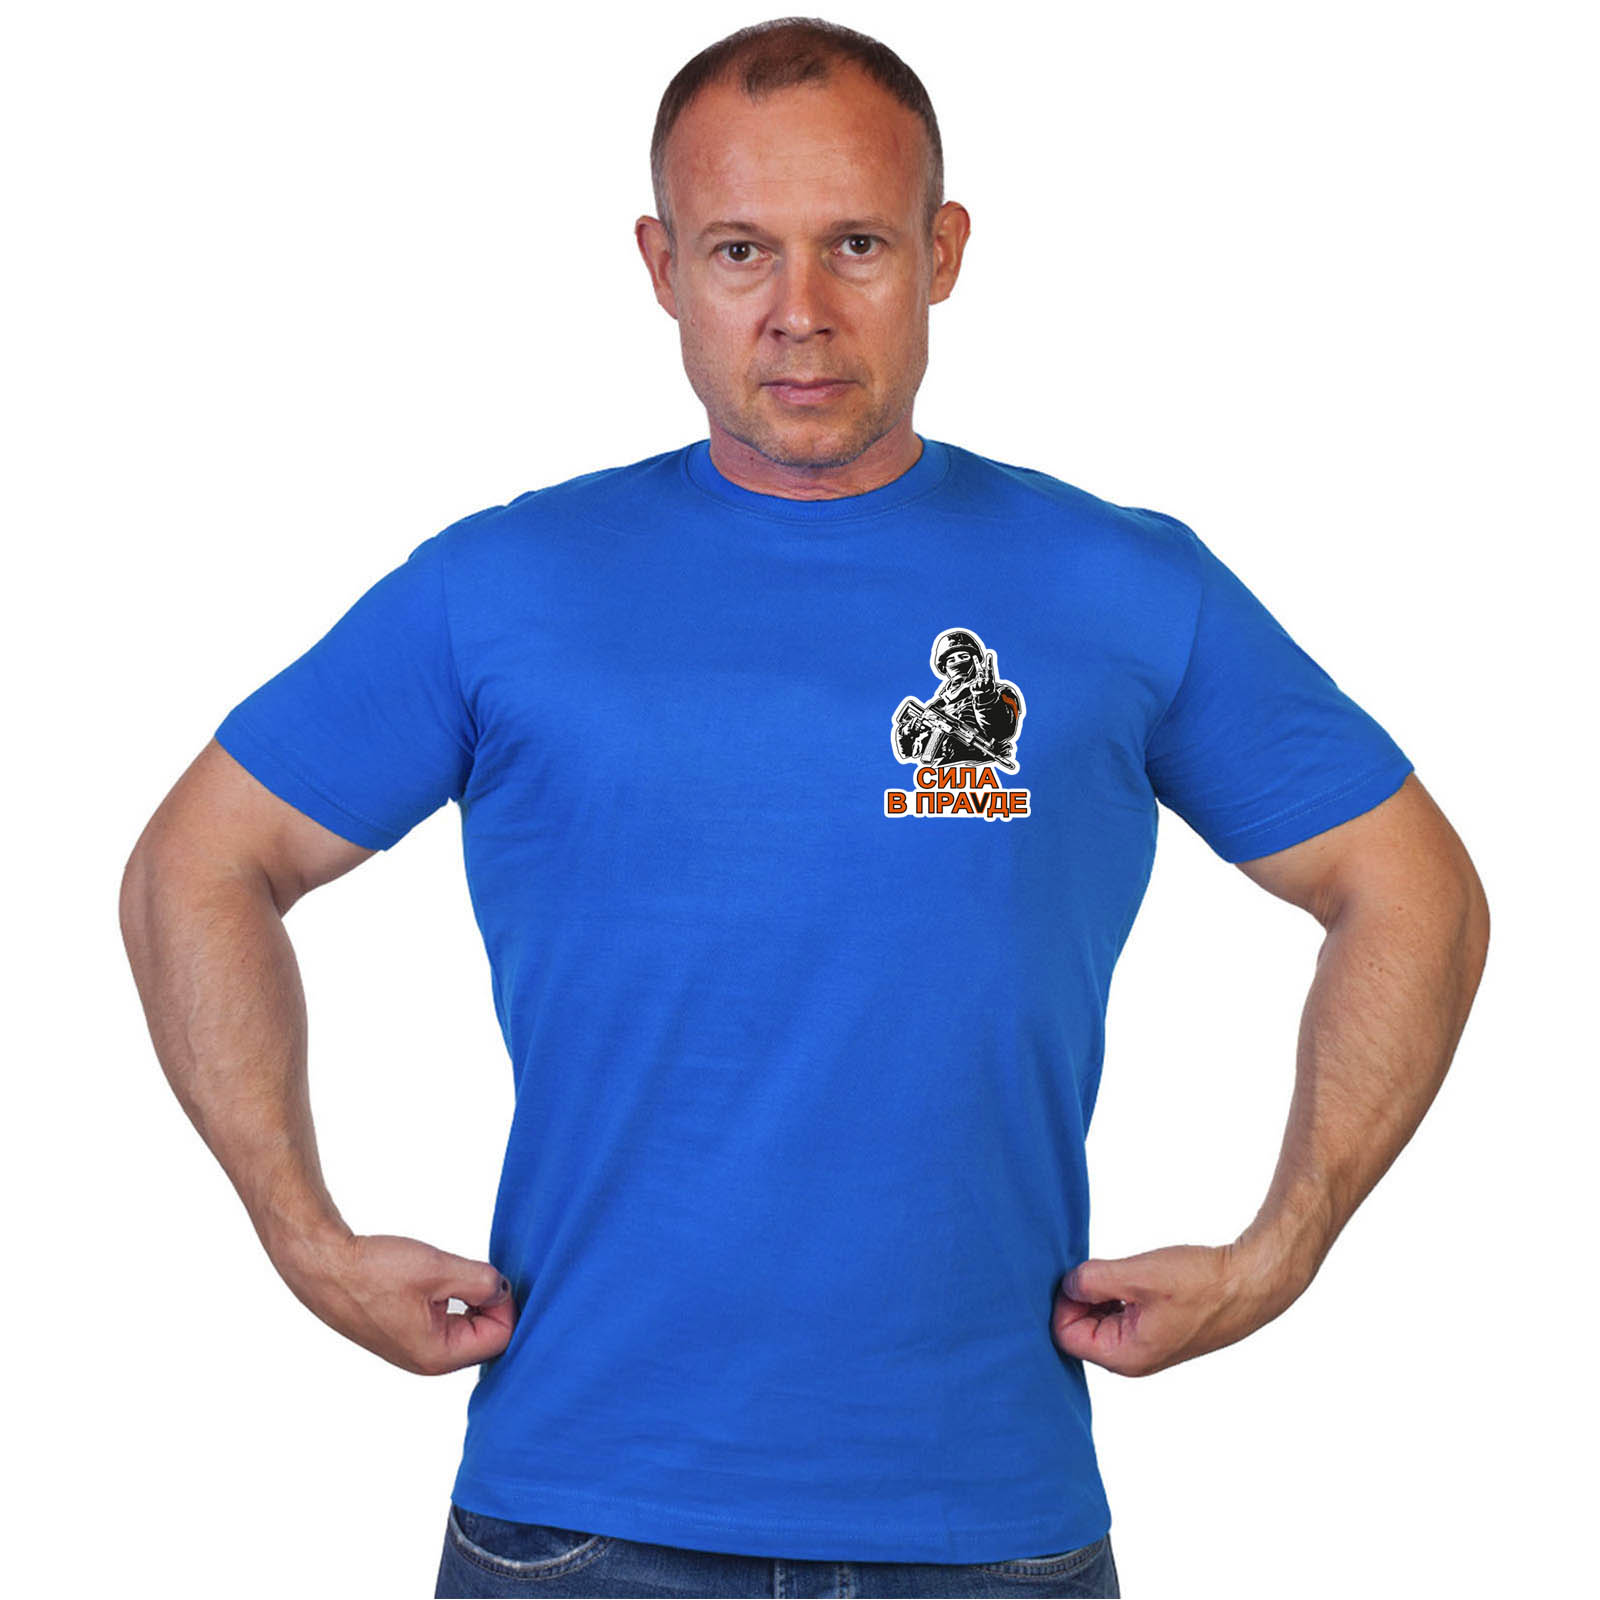 Васильковая футболка с термотрансфером "Сила в праVде"